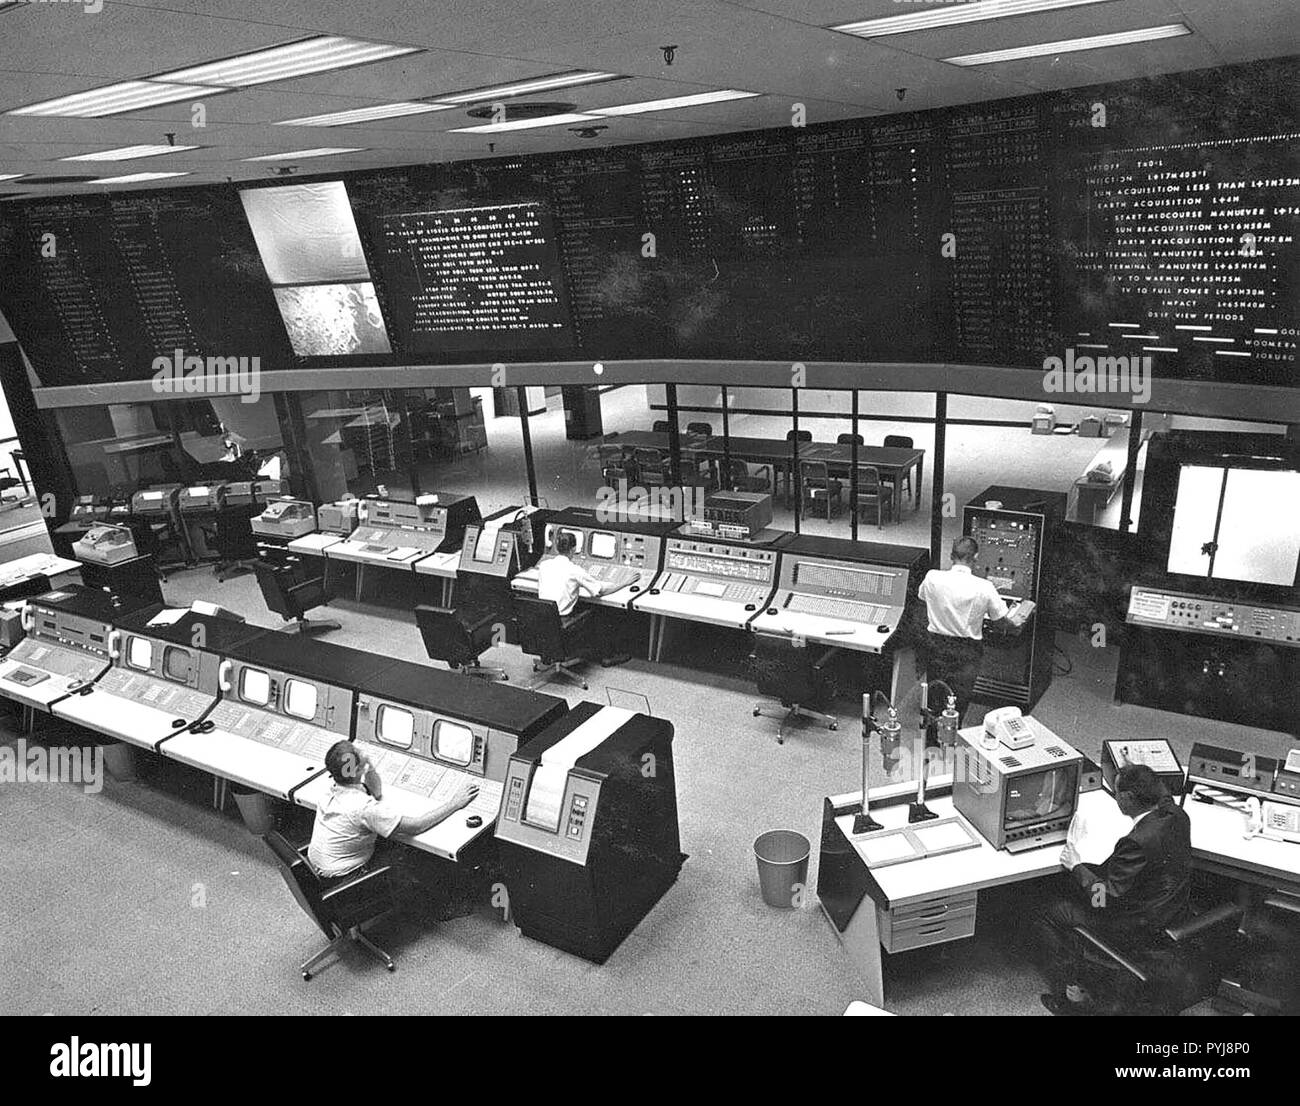 Questa immagine è stata scattata nel maggio 1964, quando la costruzione di questo centro nevralgico è lo spazio Operazioni di Volo Facility (Edificio 230), è stata dedicata al JPL. Foto Stock